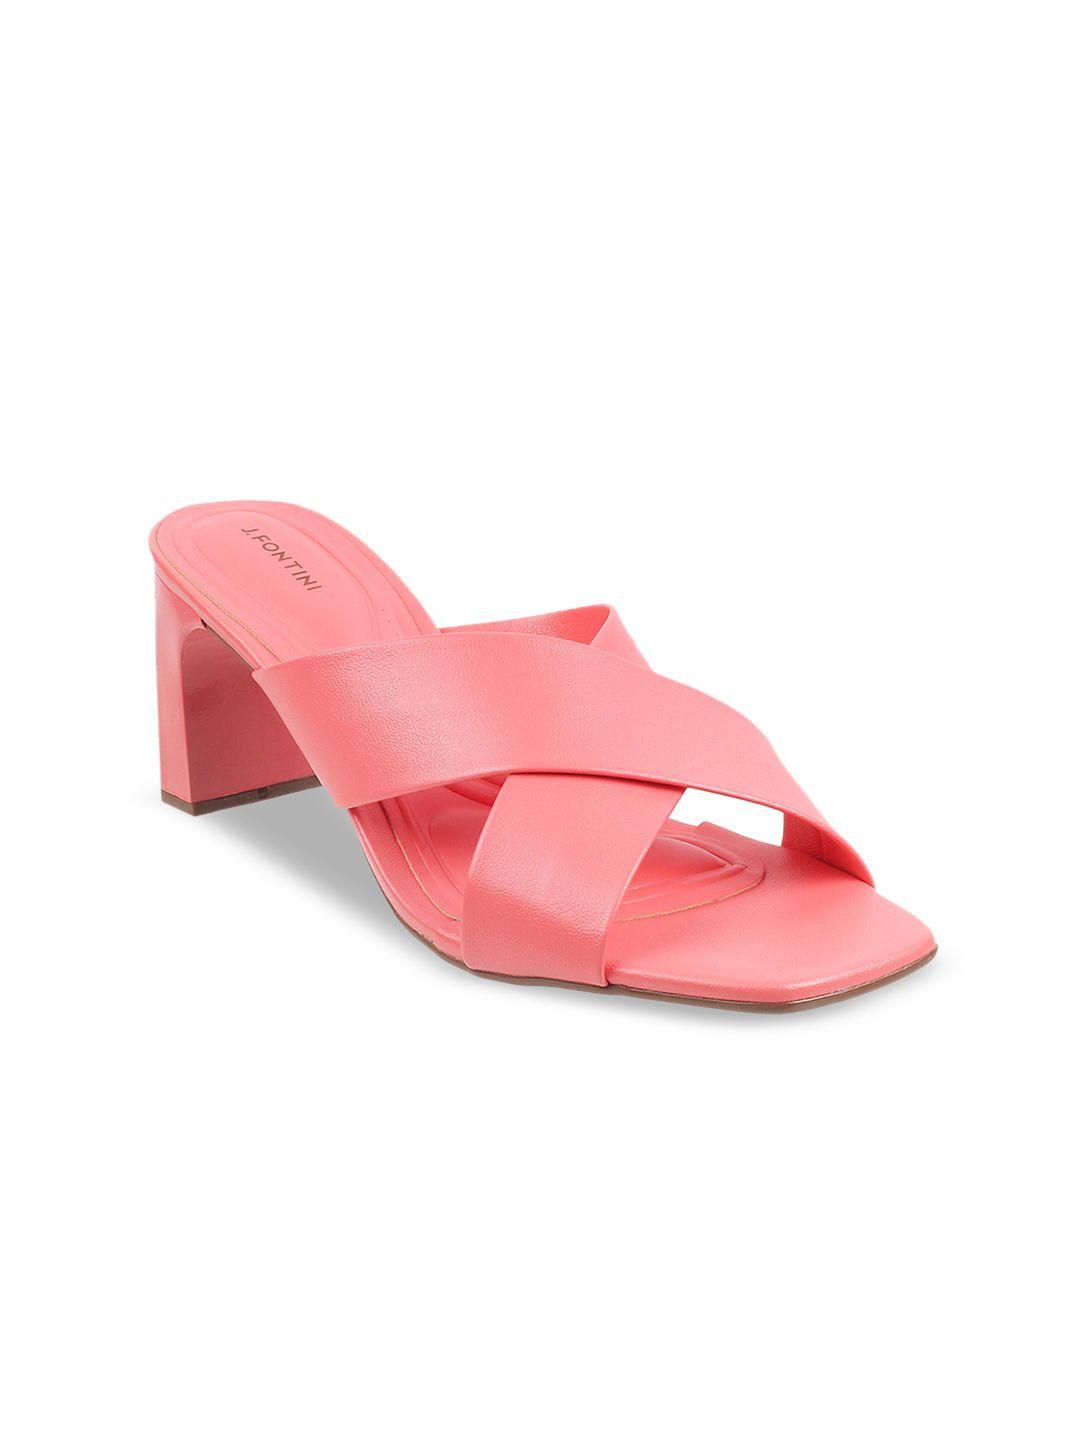 j.fontini open toe block heels